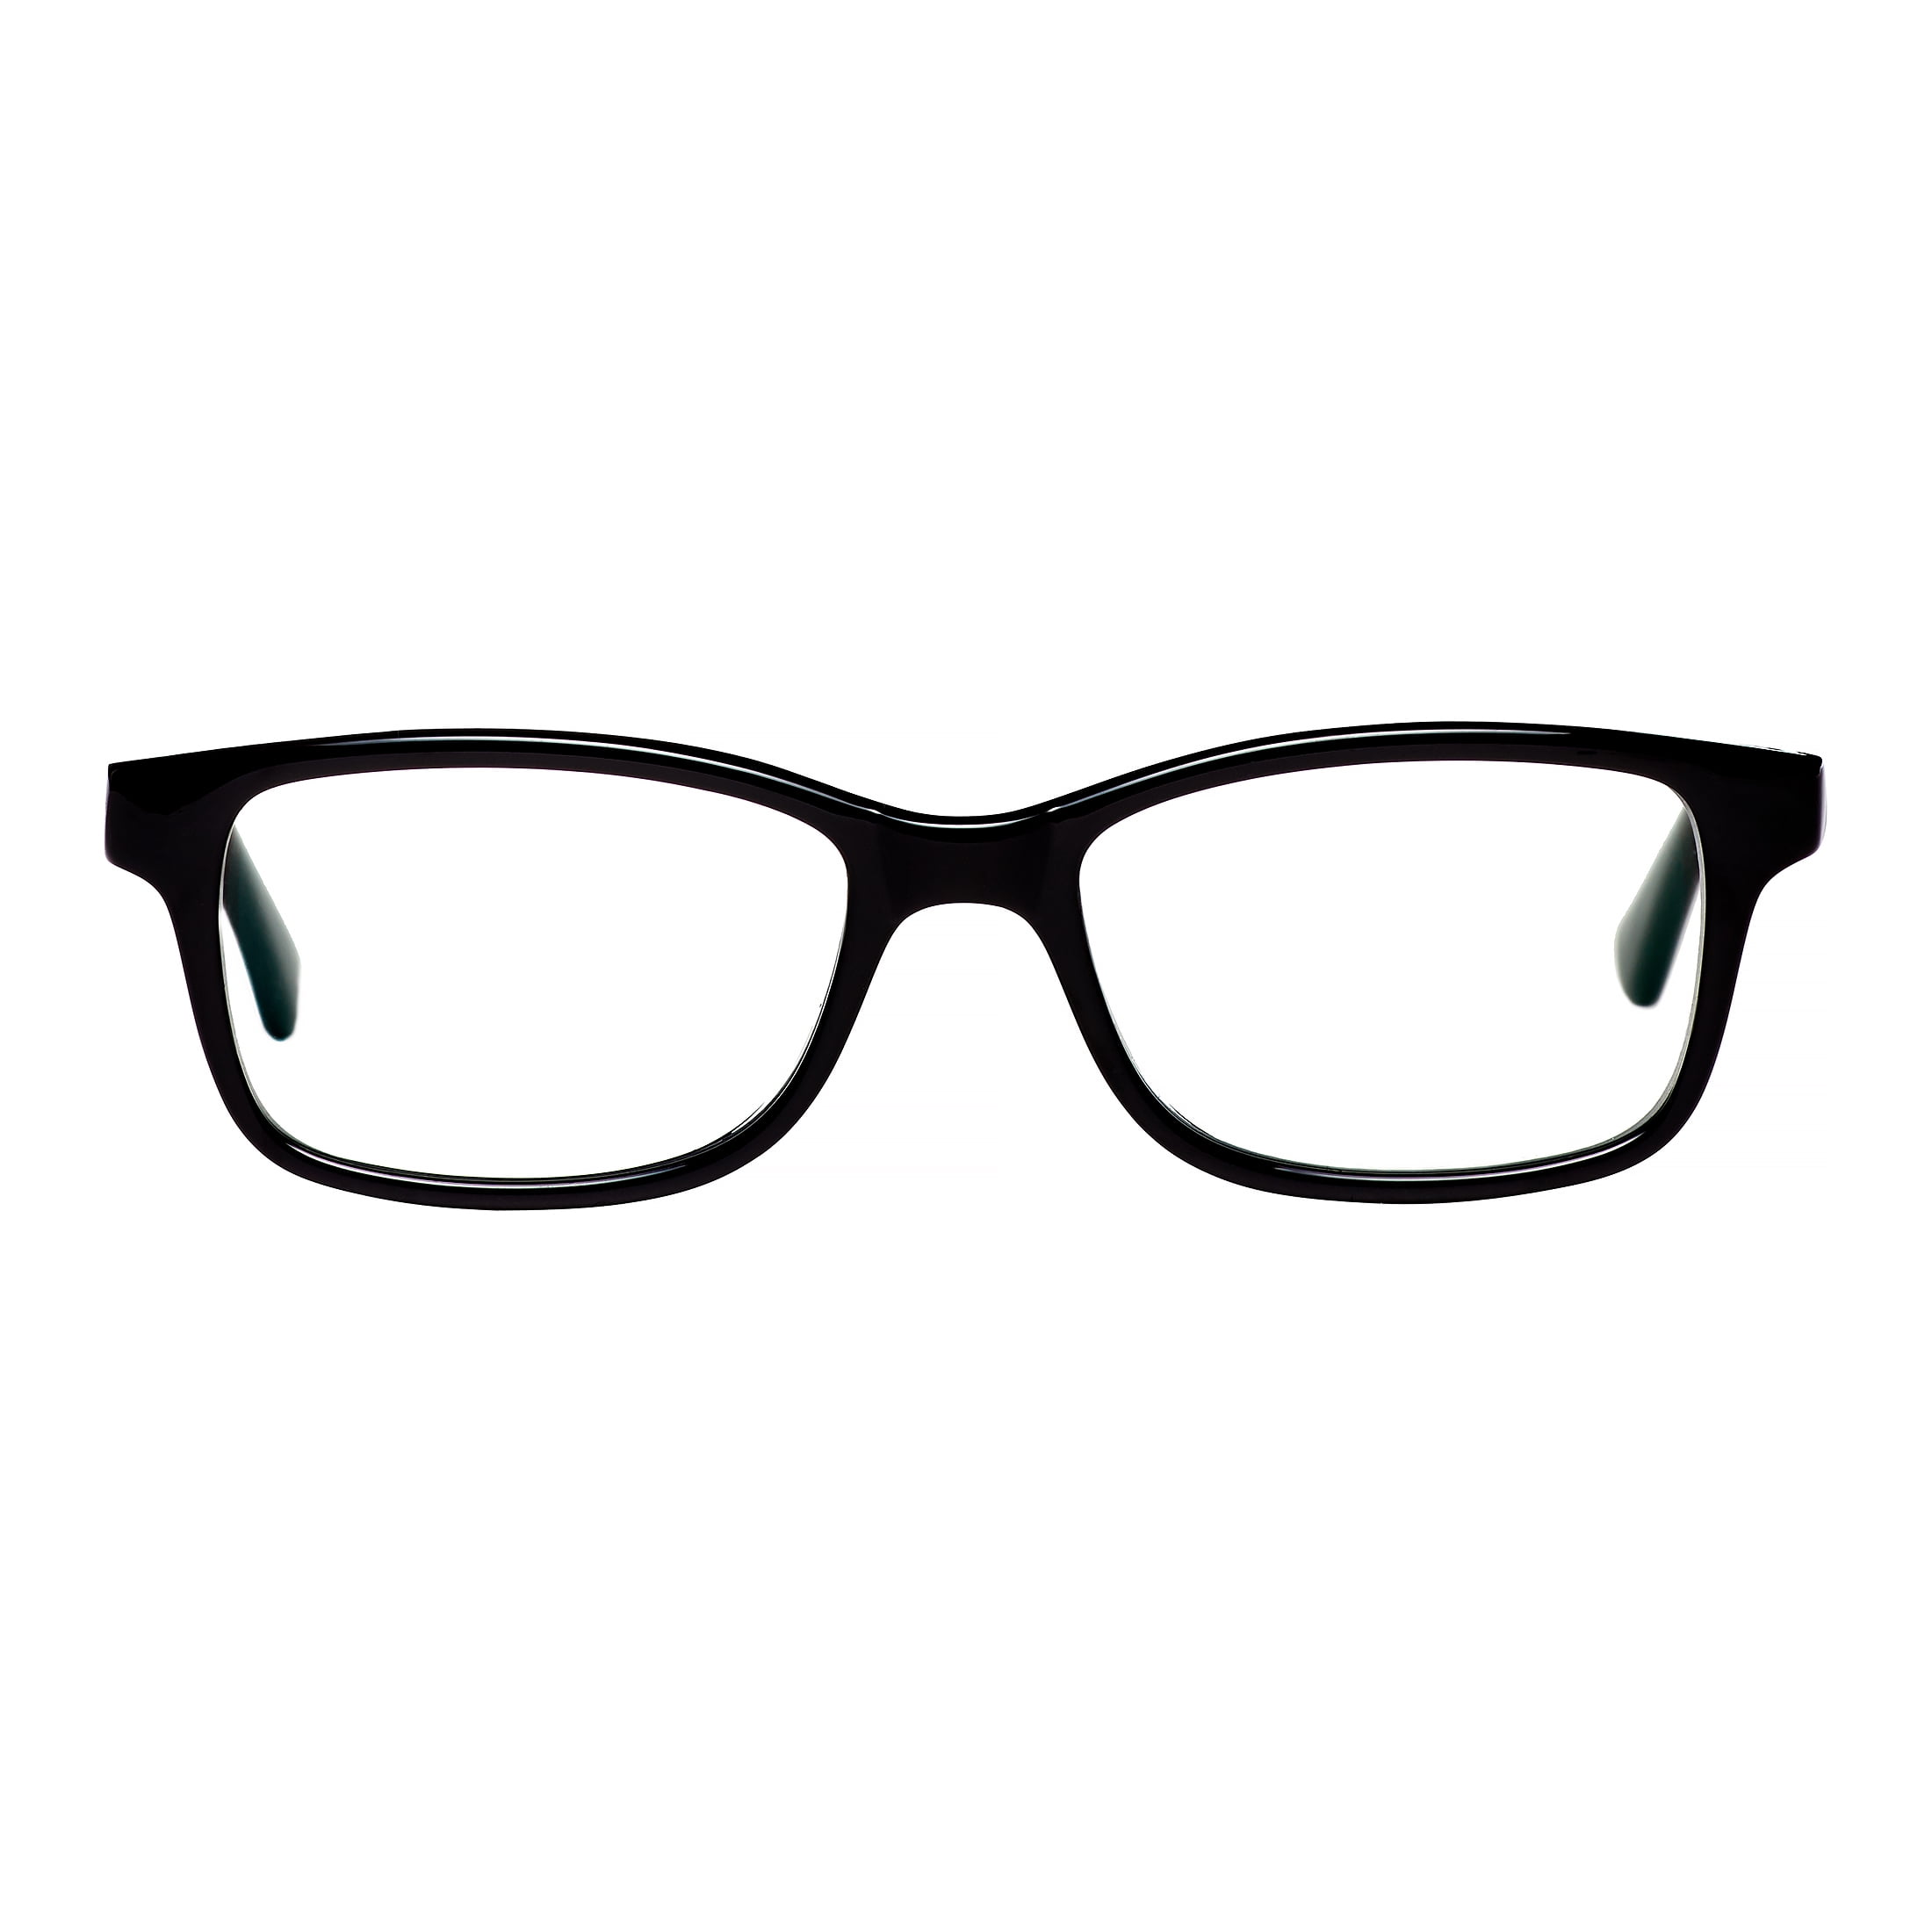 Square Nerd Eyeglasses Computer Gaming Glasses for Kids Girls Boys Dark Blue-Red,127mm Anti Glare UV Digital Eyestrain FaerieKing Blue Light Blocking Glasses